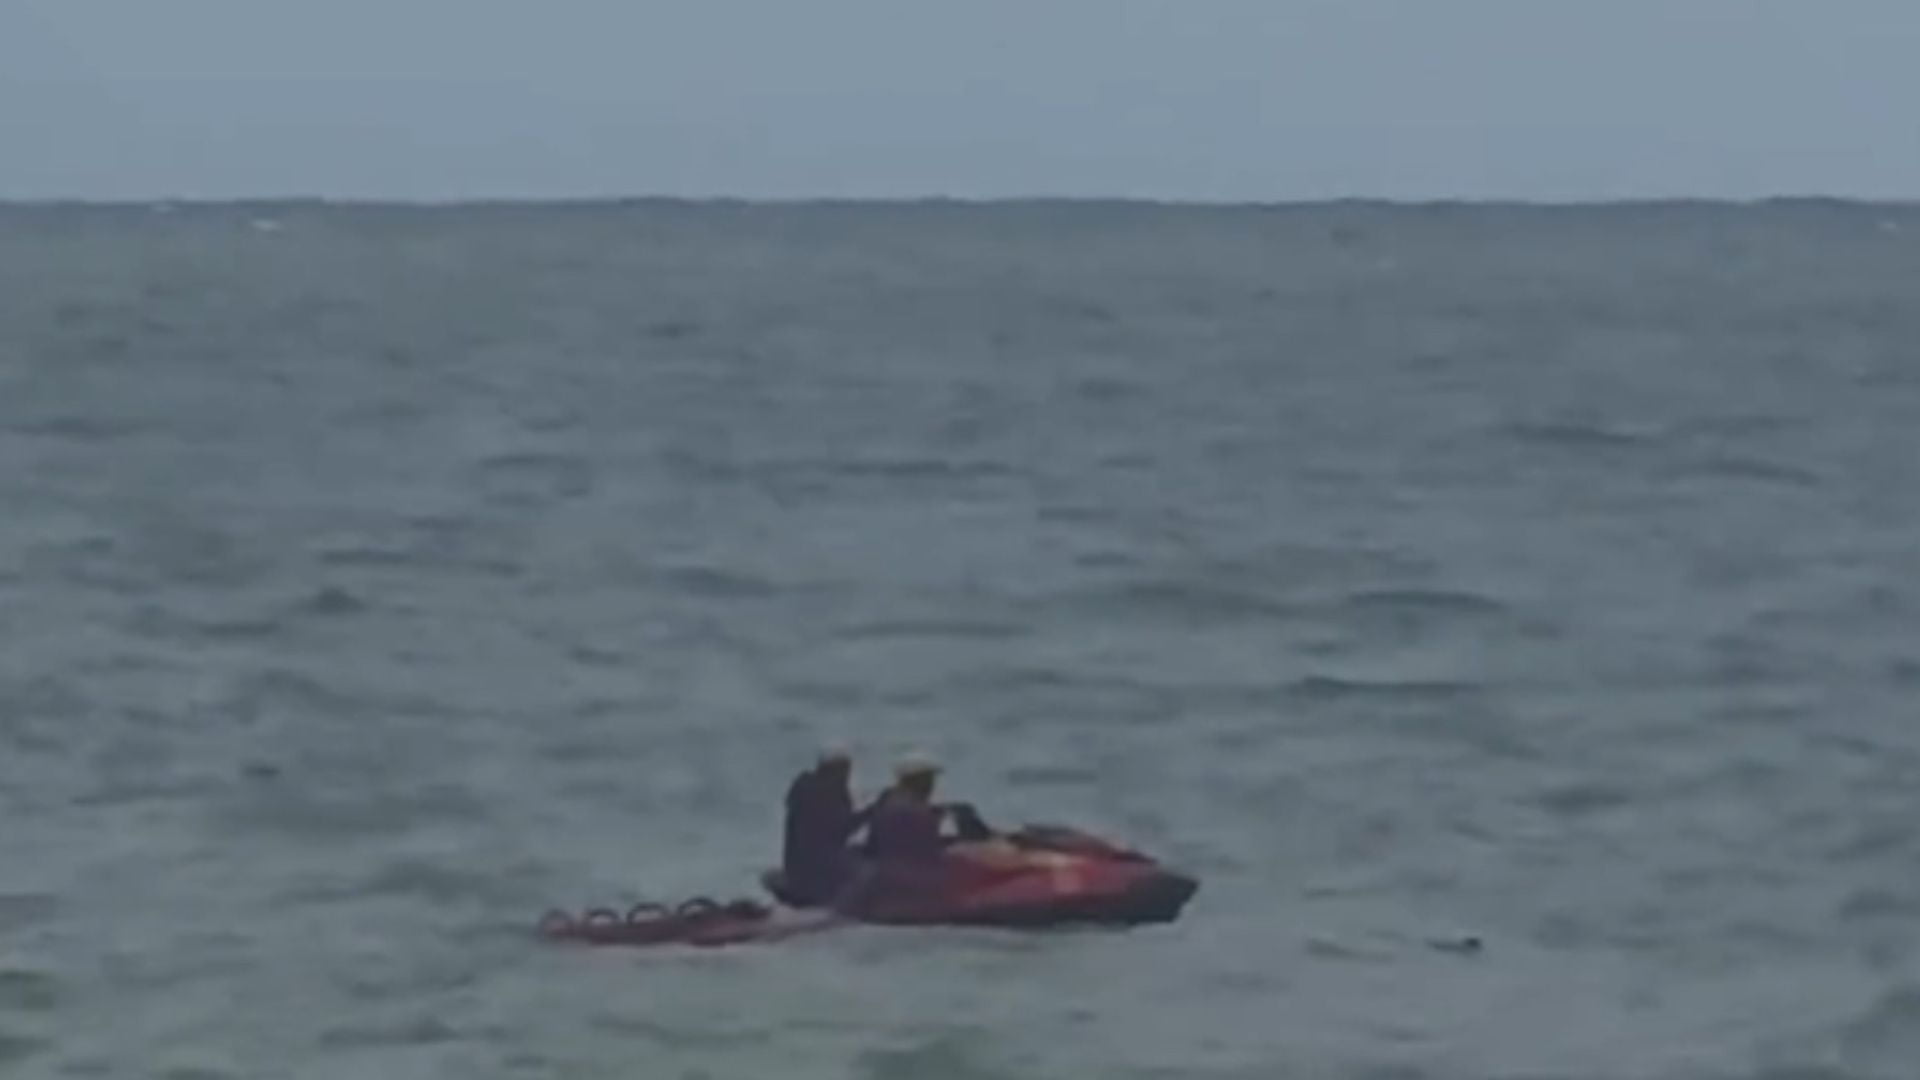 Bombeiros retiram corpo em decomposição e com mordidas de animais marinhos, em praia de Boa Viagem